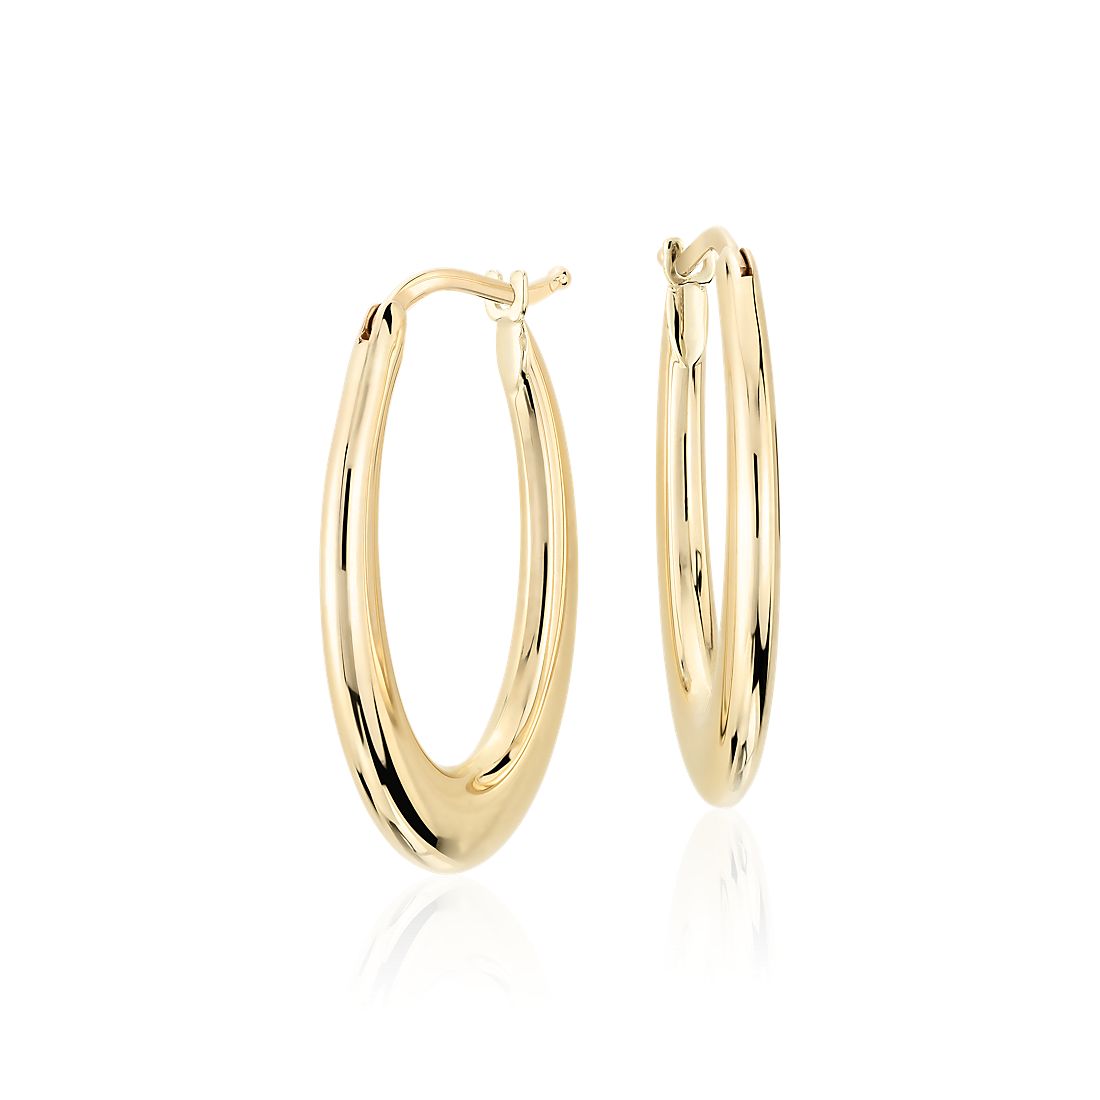 Oval Hoop Earrings in 14k Italian Yellow Gold (25 x 17 mm)